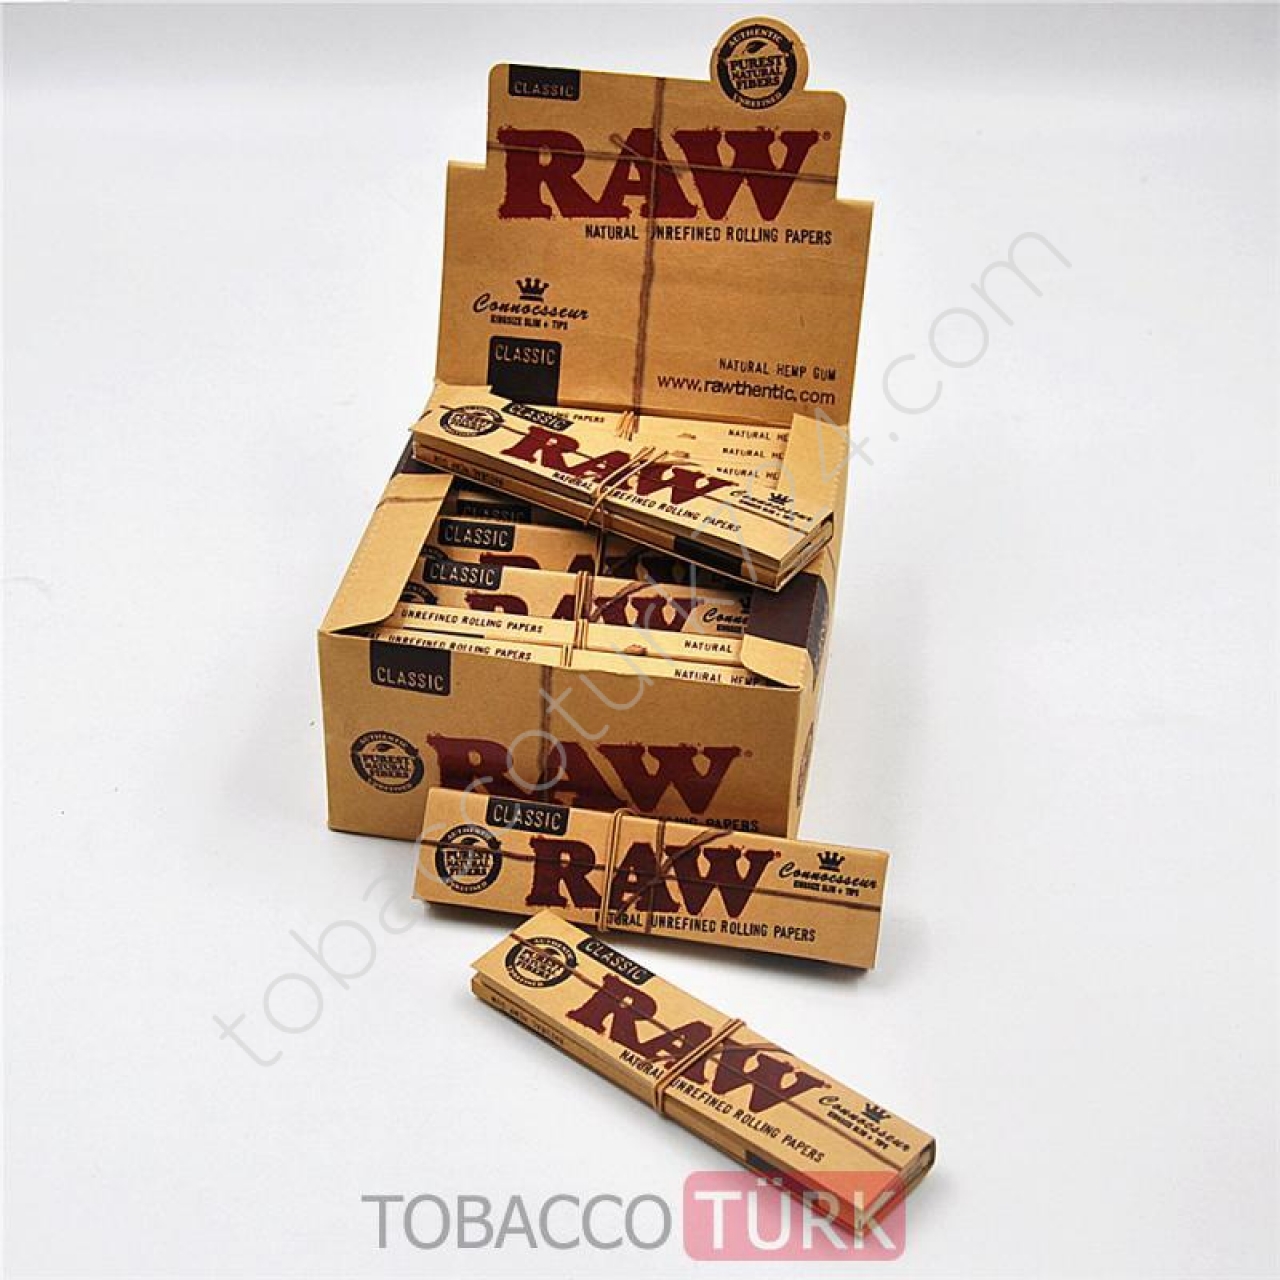 Raw ZIVANALI Tütün Sarma Kağıdı Orjinal Ürün